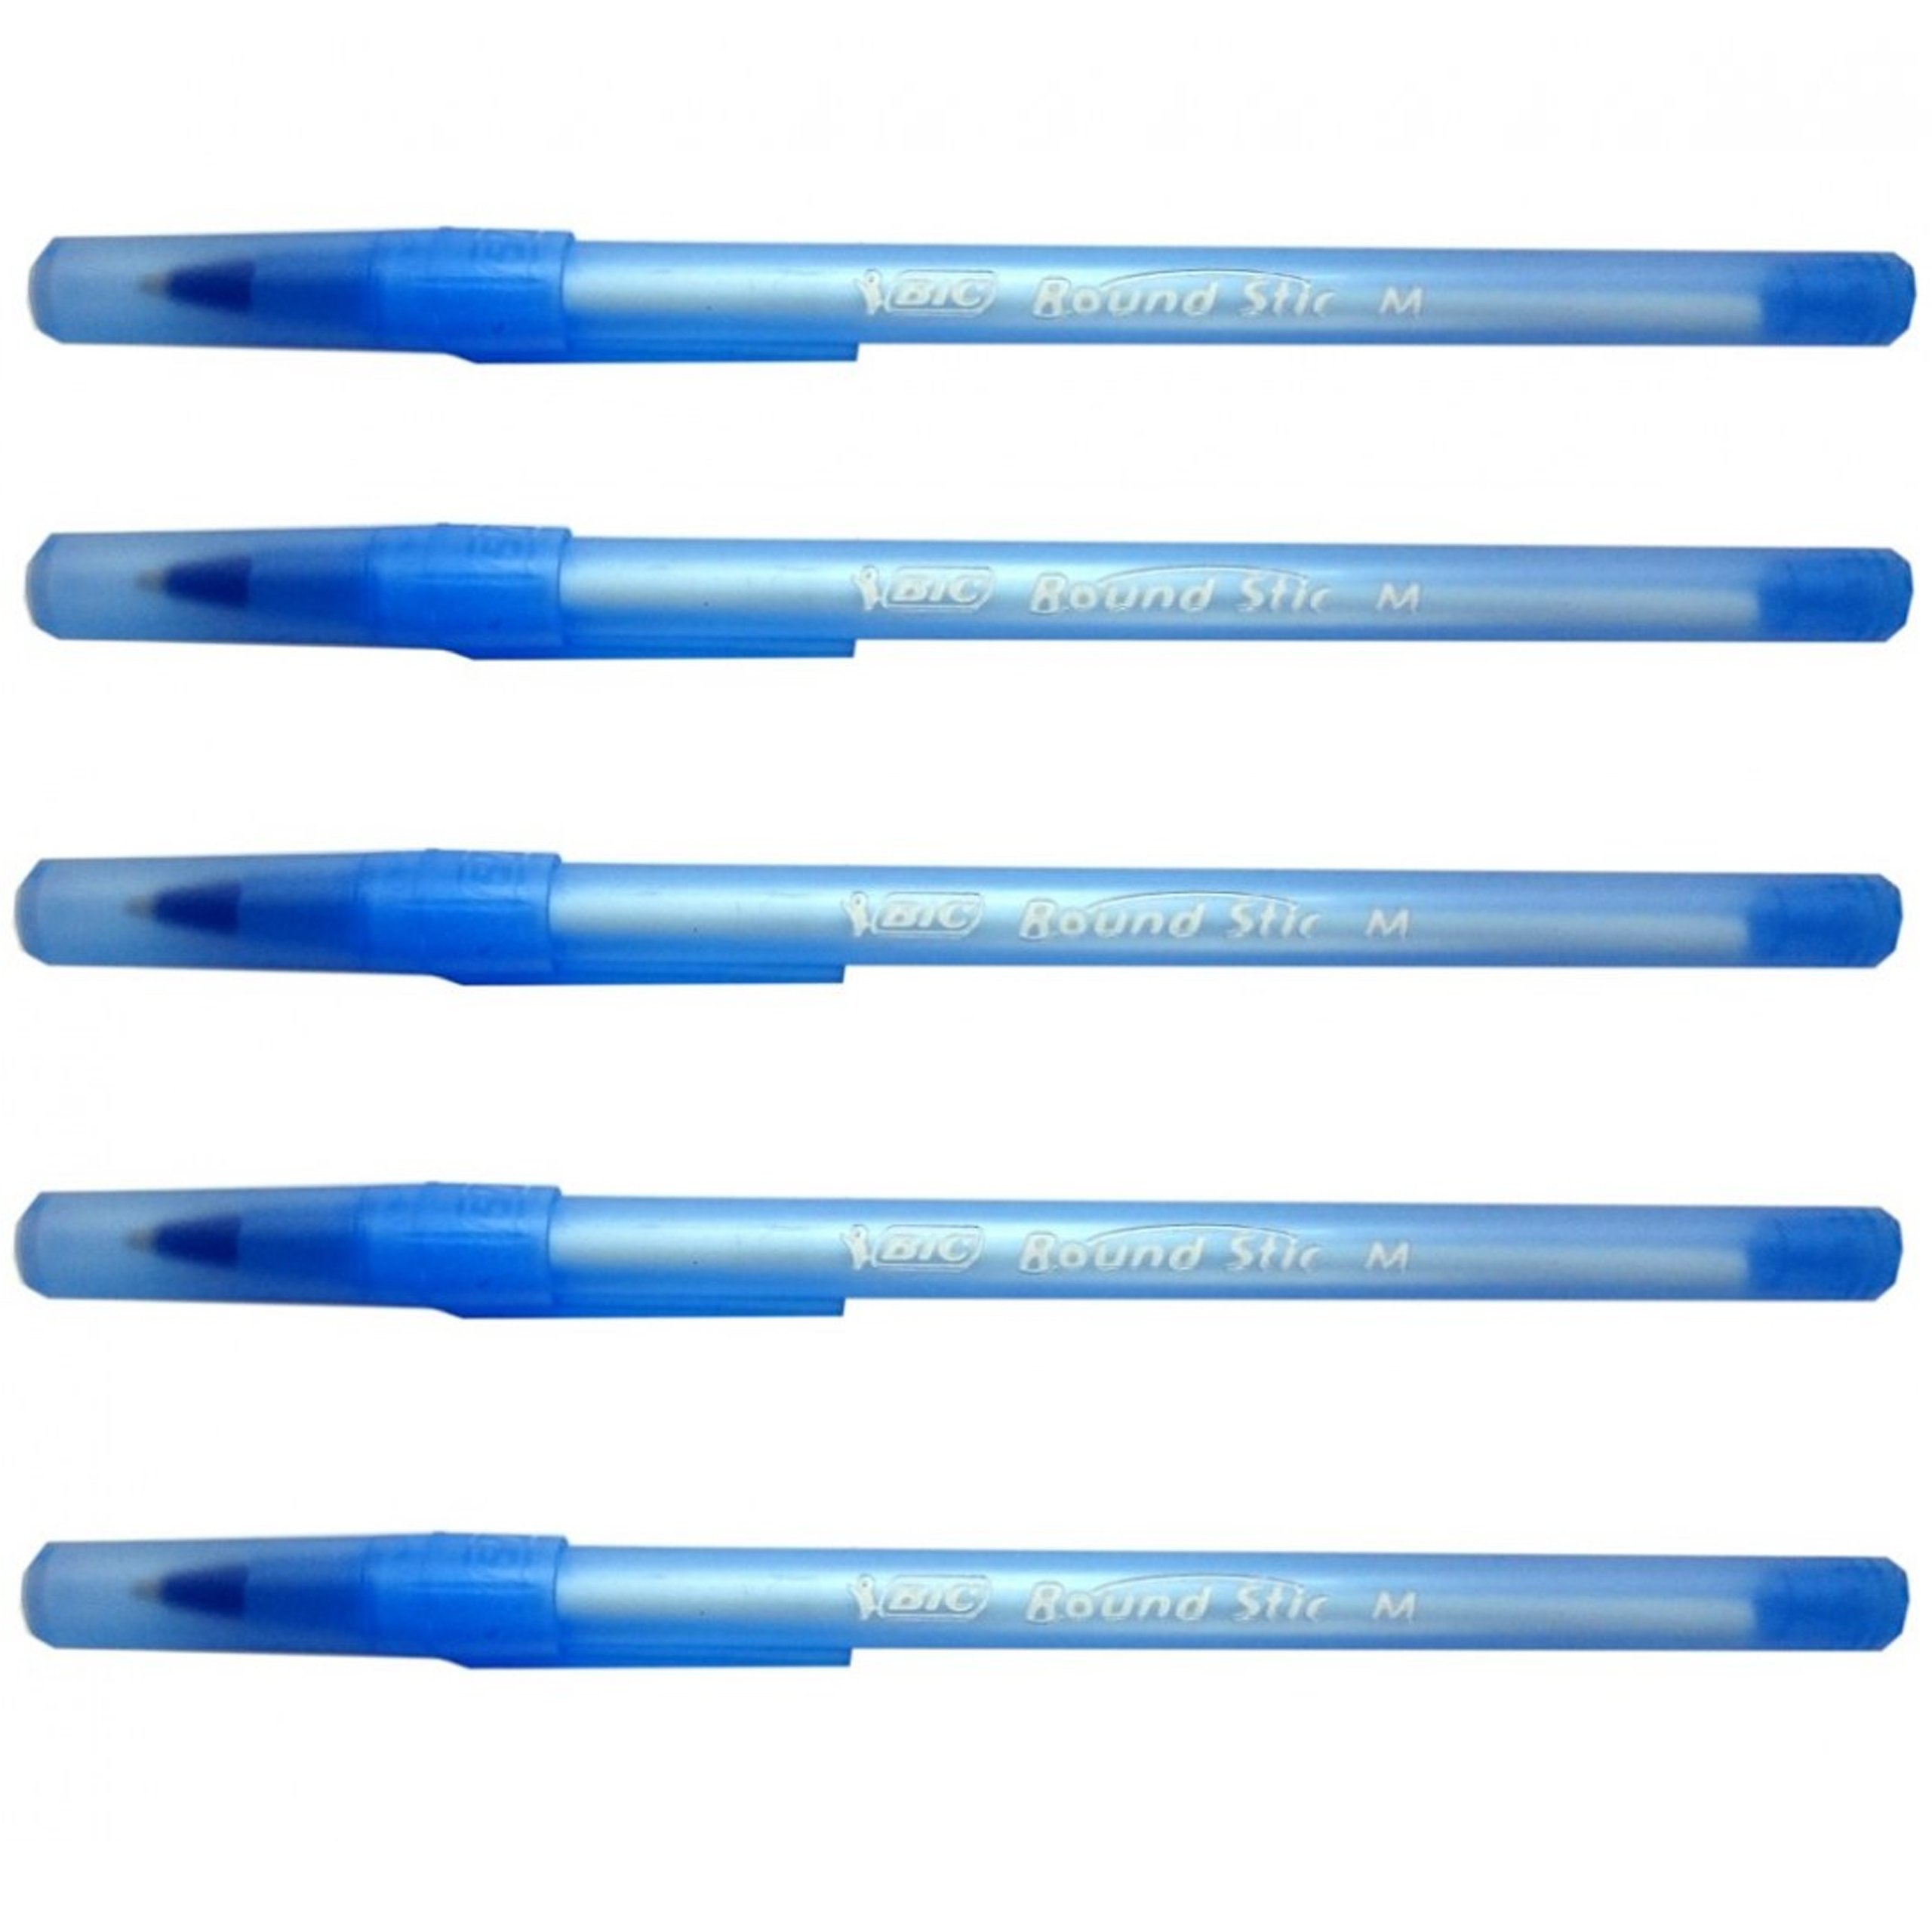 Ручка за 5 рублей. Ручки BIC Round Stic m. Round Stick ручка BIC. BIC ручка шариковая голубая. Синяя ручка BIC.